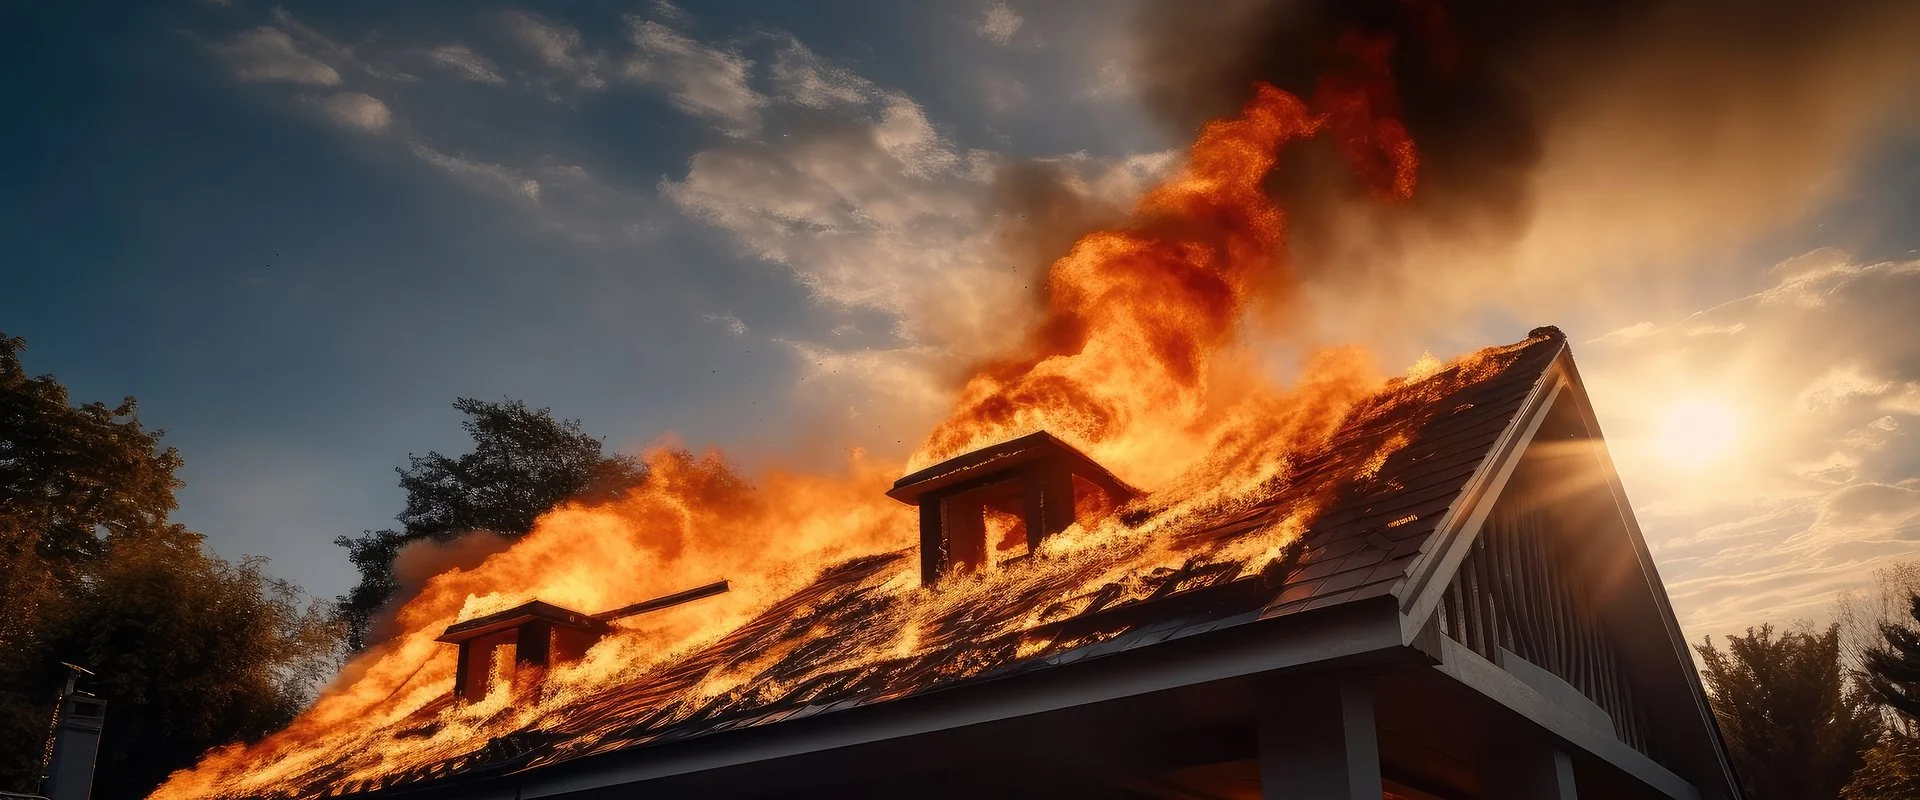 Każdego roku płonie coraz więcej budynków. Czy dach może być odporny na pożary?